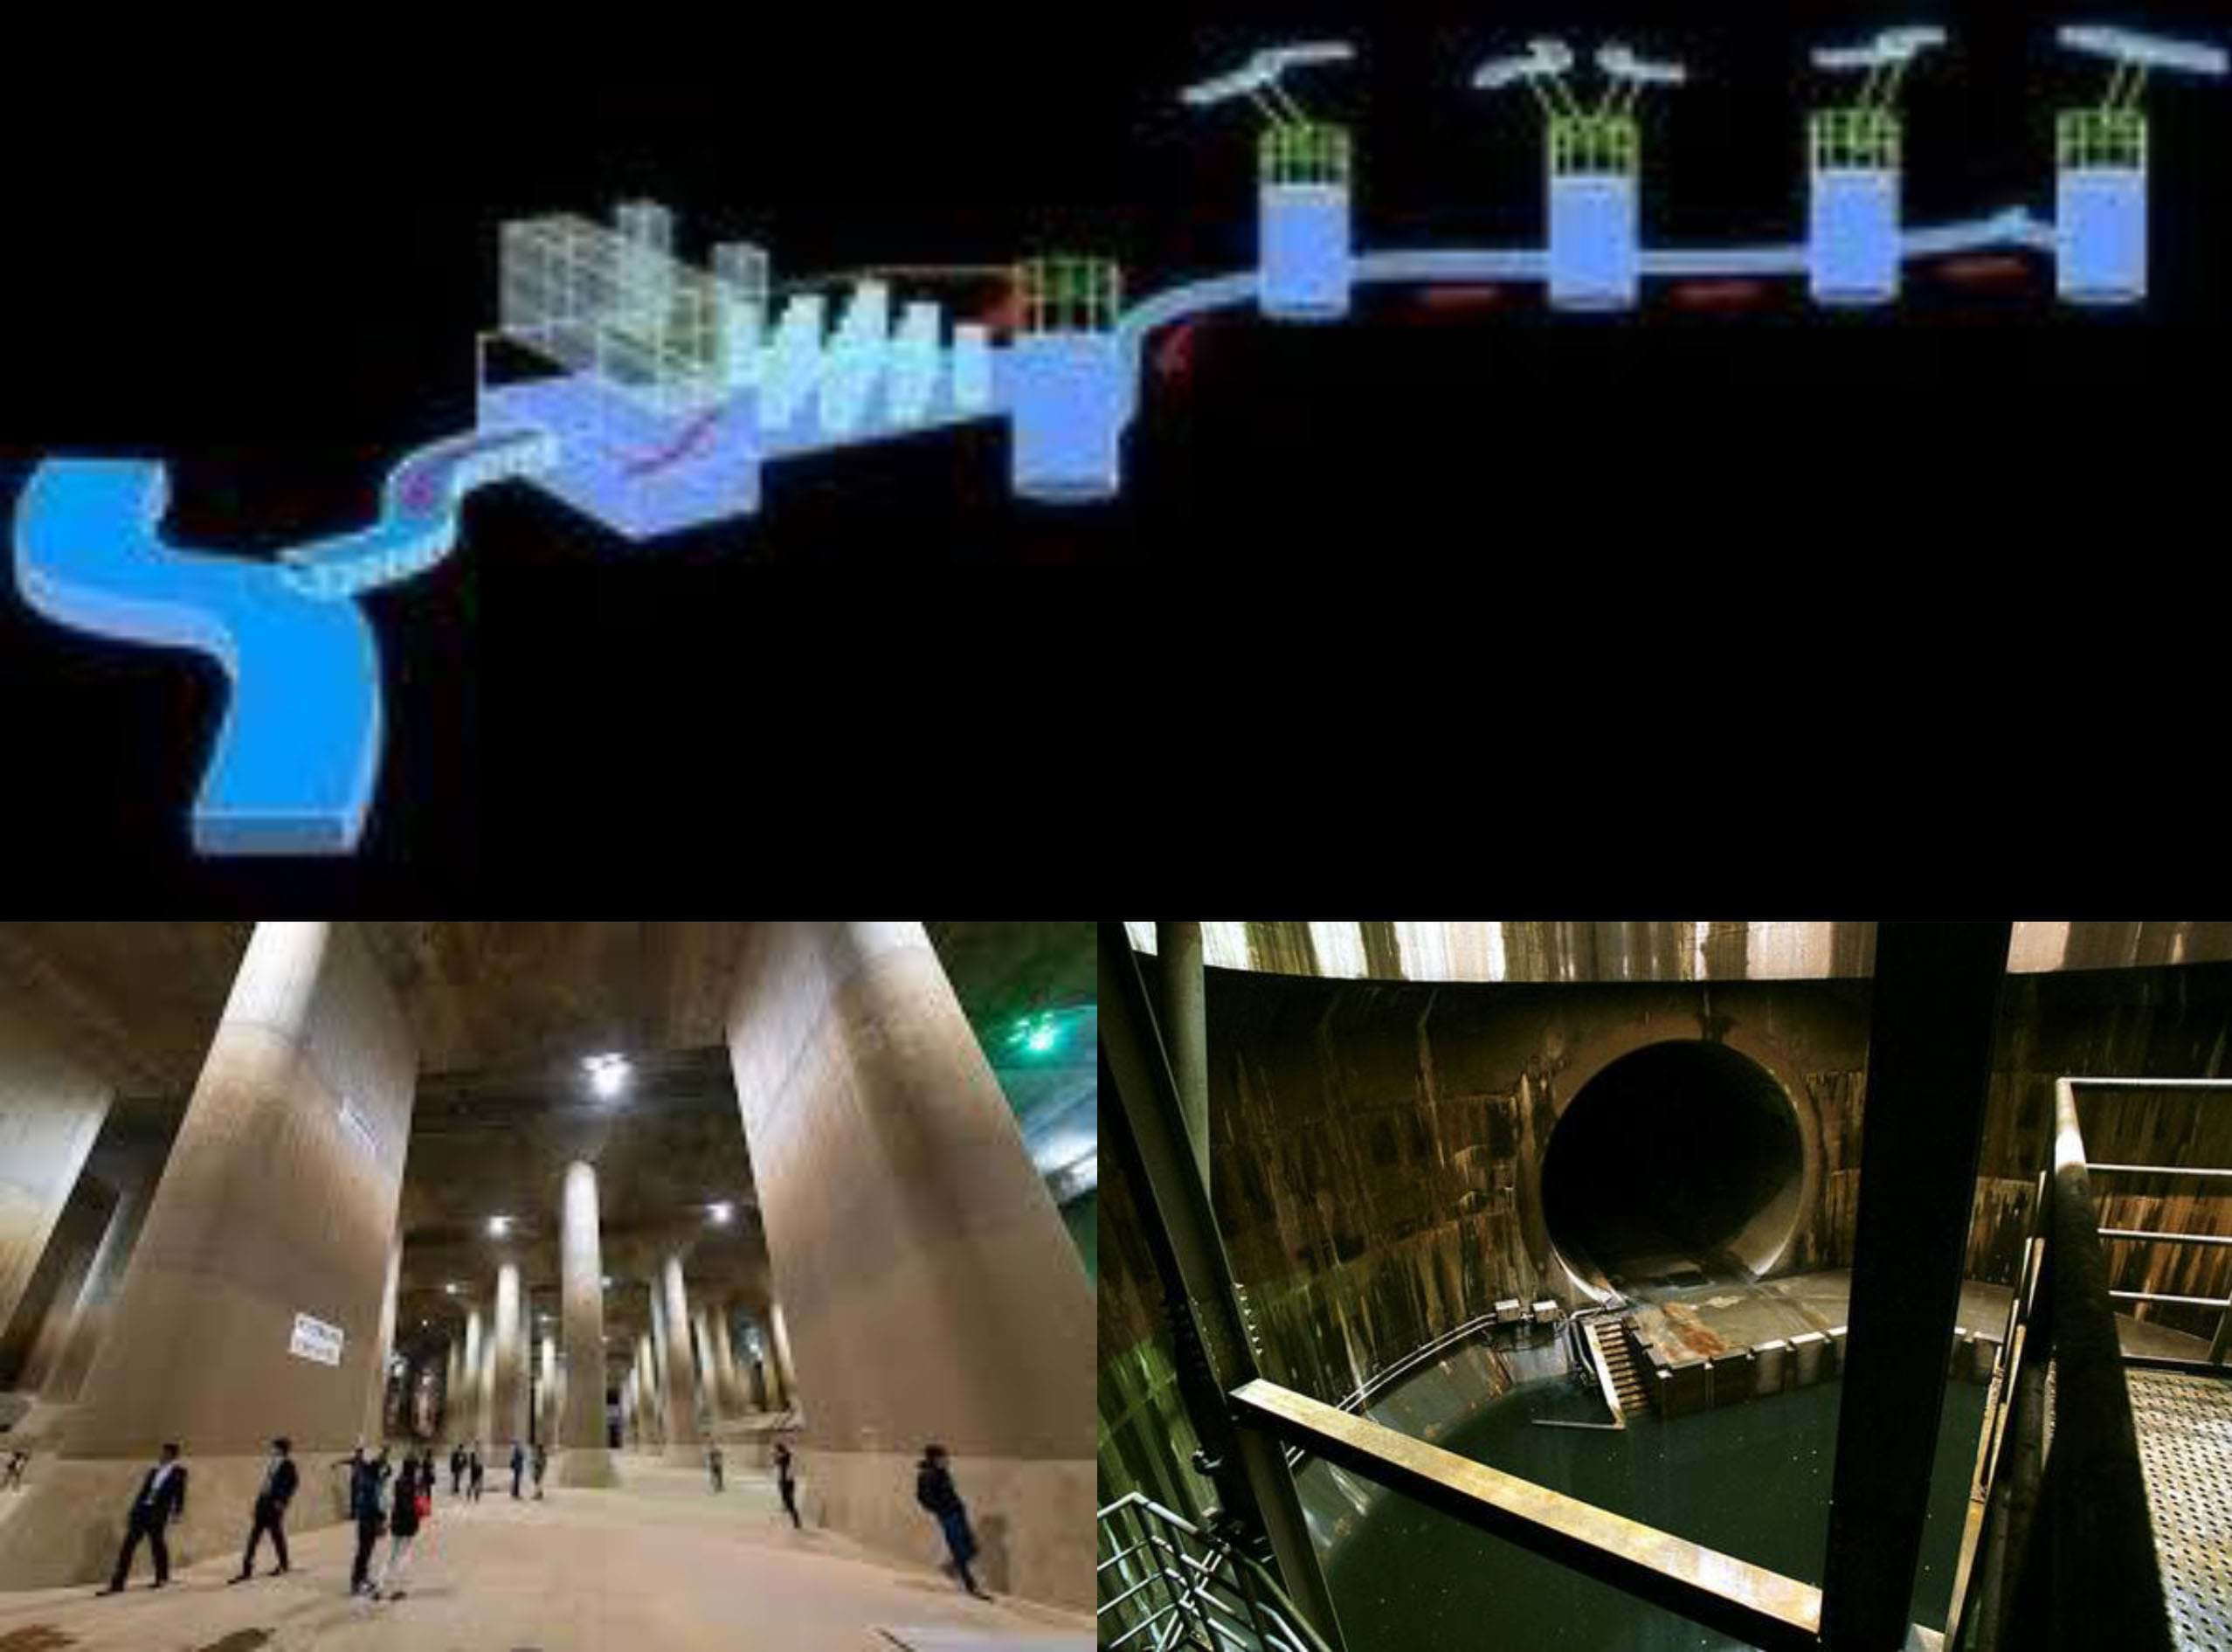 Dự án “G-cans” trị giá 2,6 tỷ USD tại Tokyo, Nhật Bản: sơ đồ cống ngầm giếng thu và bể chứa trạm bơm ra sông; Bể ngầm 23 triệu M3, cửa sông ngầm đổ vào giếng thu